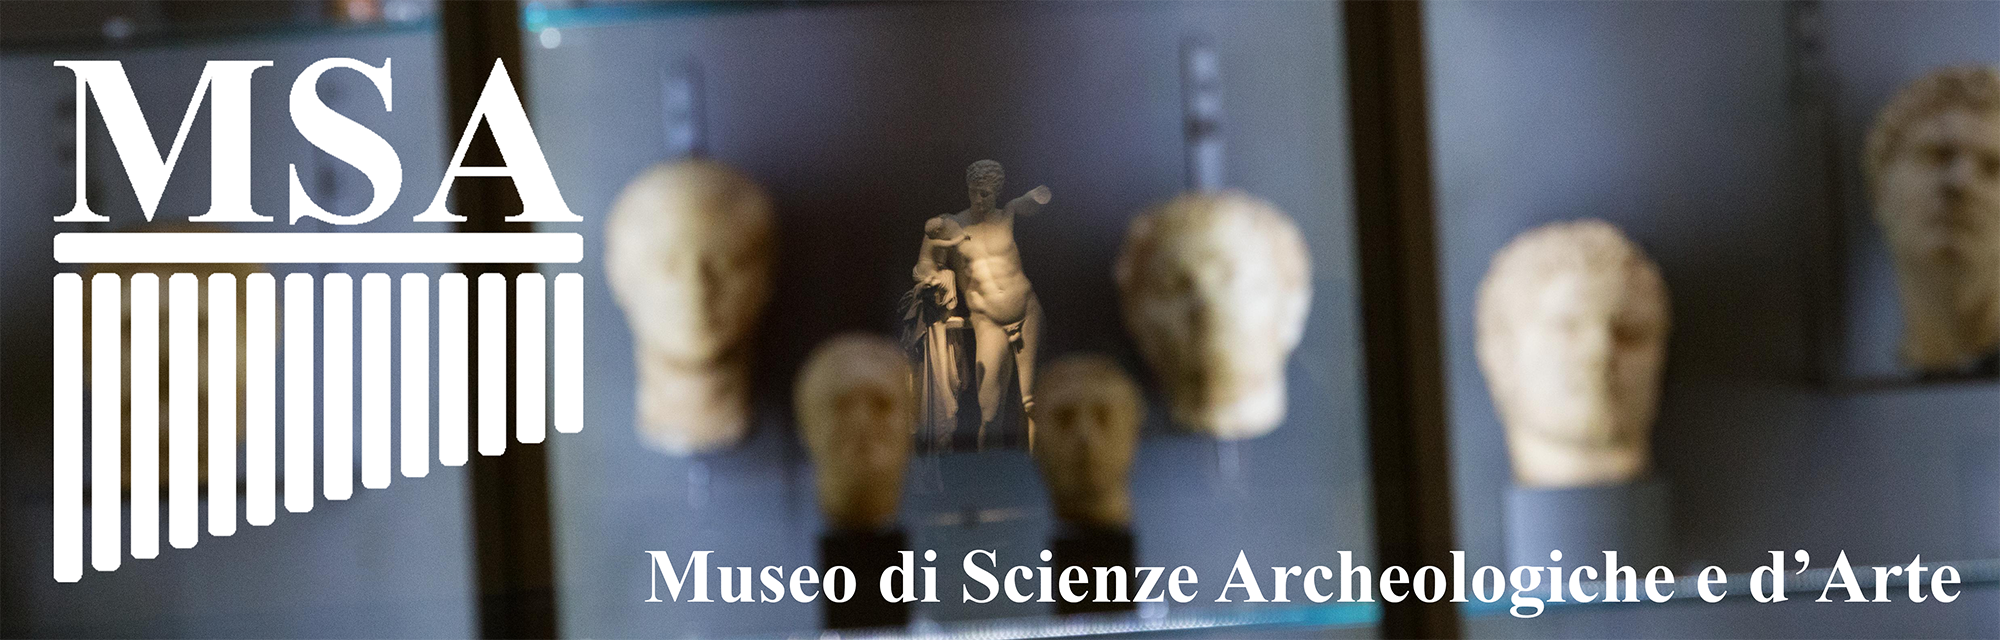 Banner del Museo di Scienze Archeologiche e d'Arte